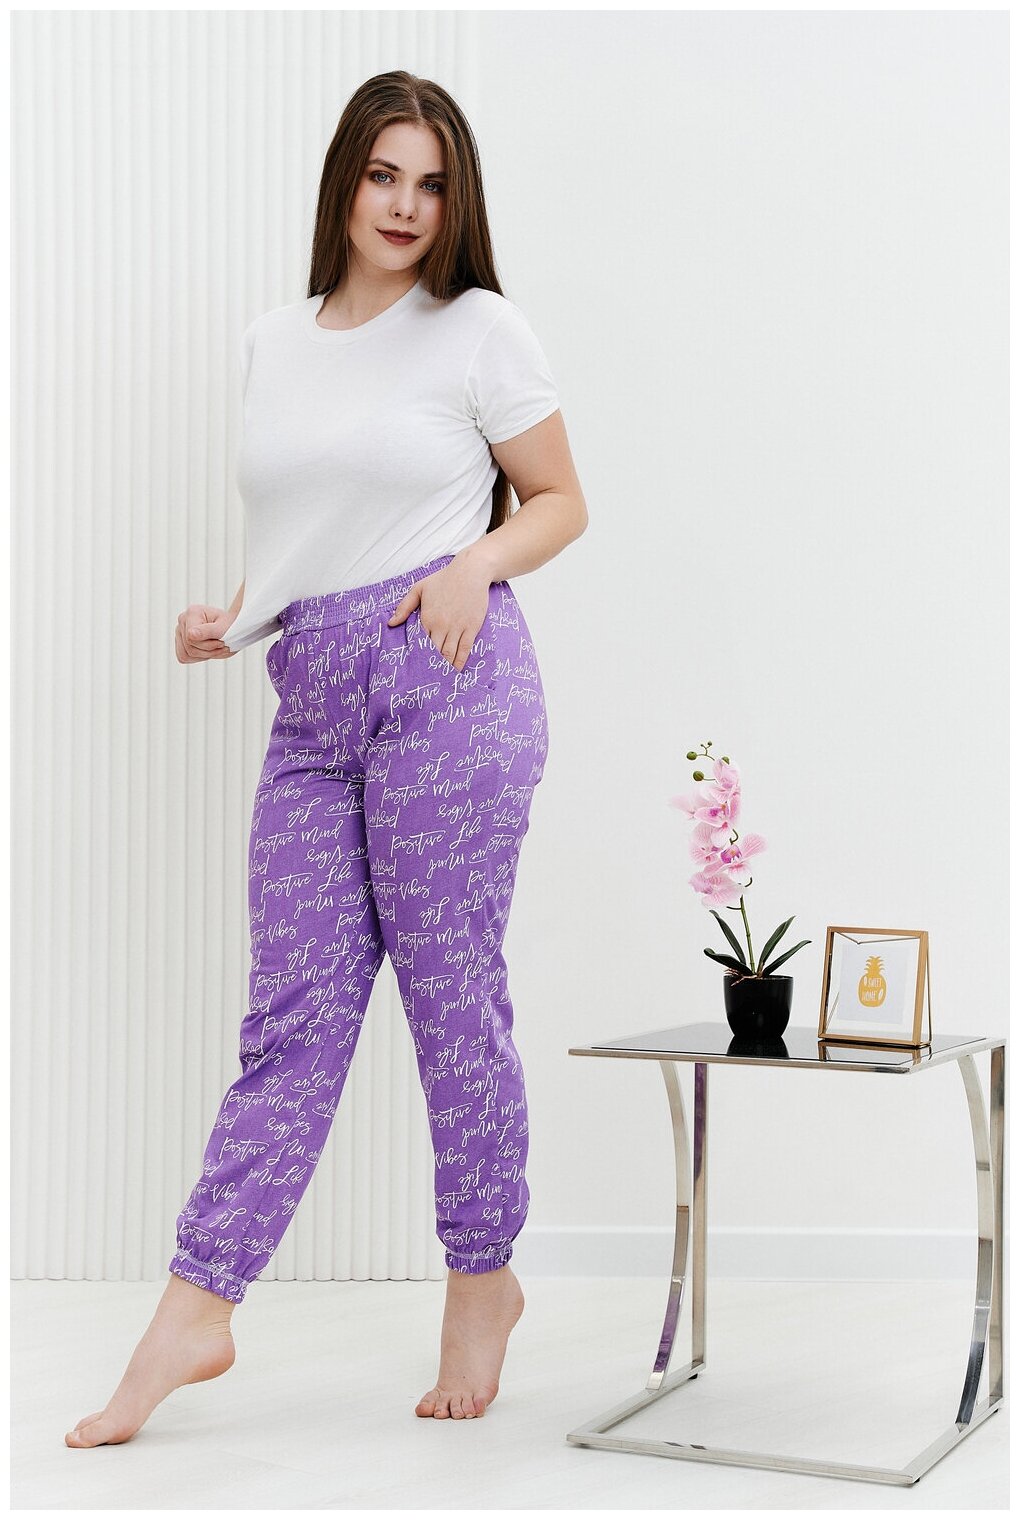 Брюки Натали, без рукава, пояс на резинке, карманы, размер 54, фиолетовый - фотография № 6